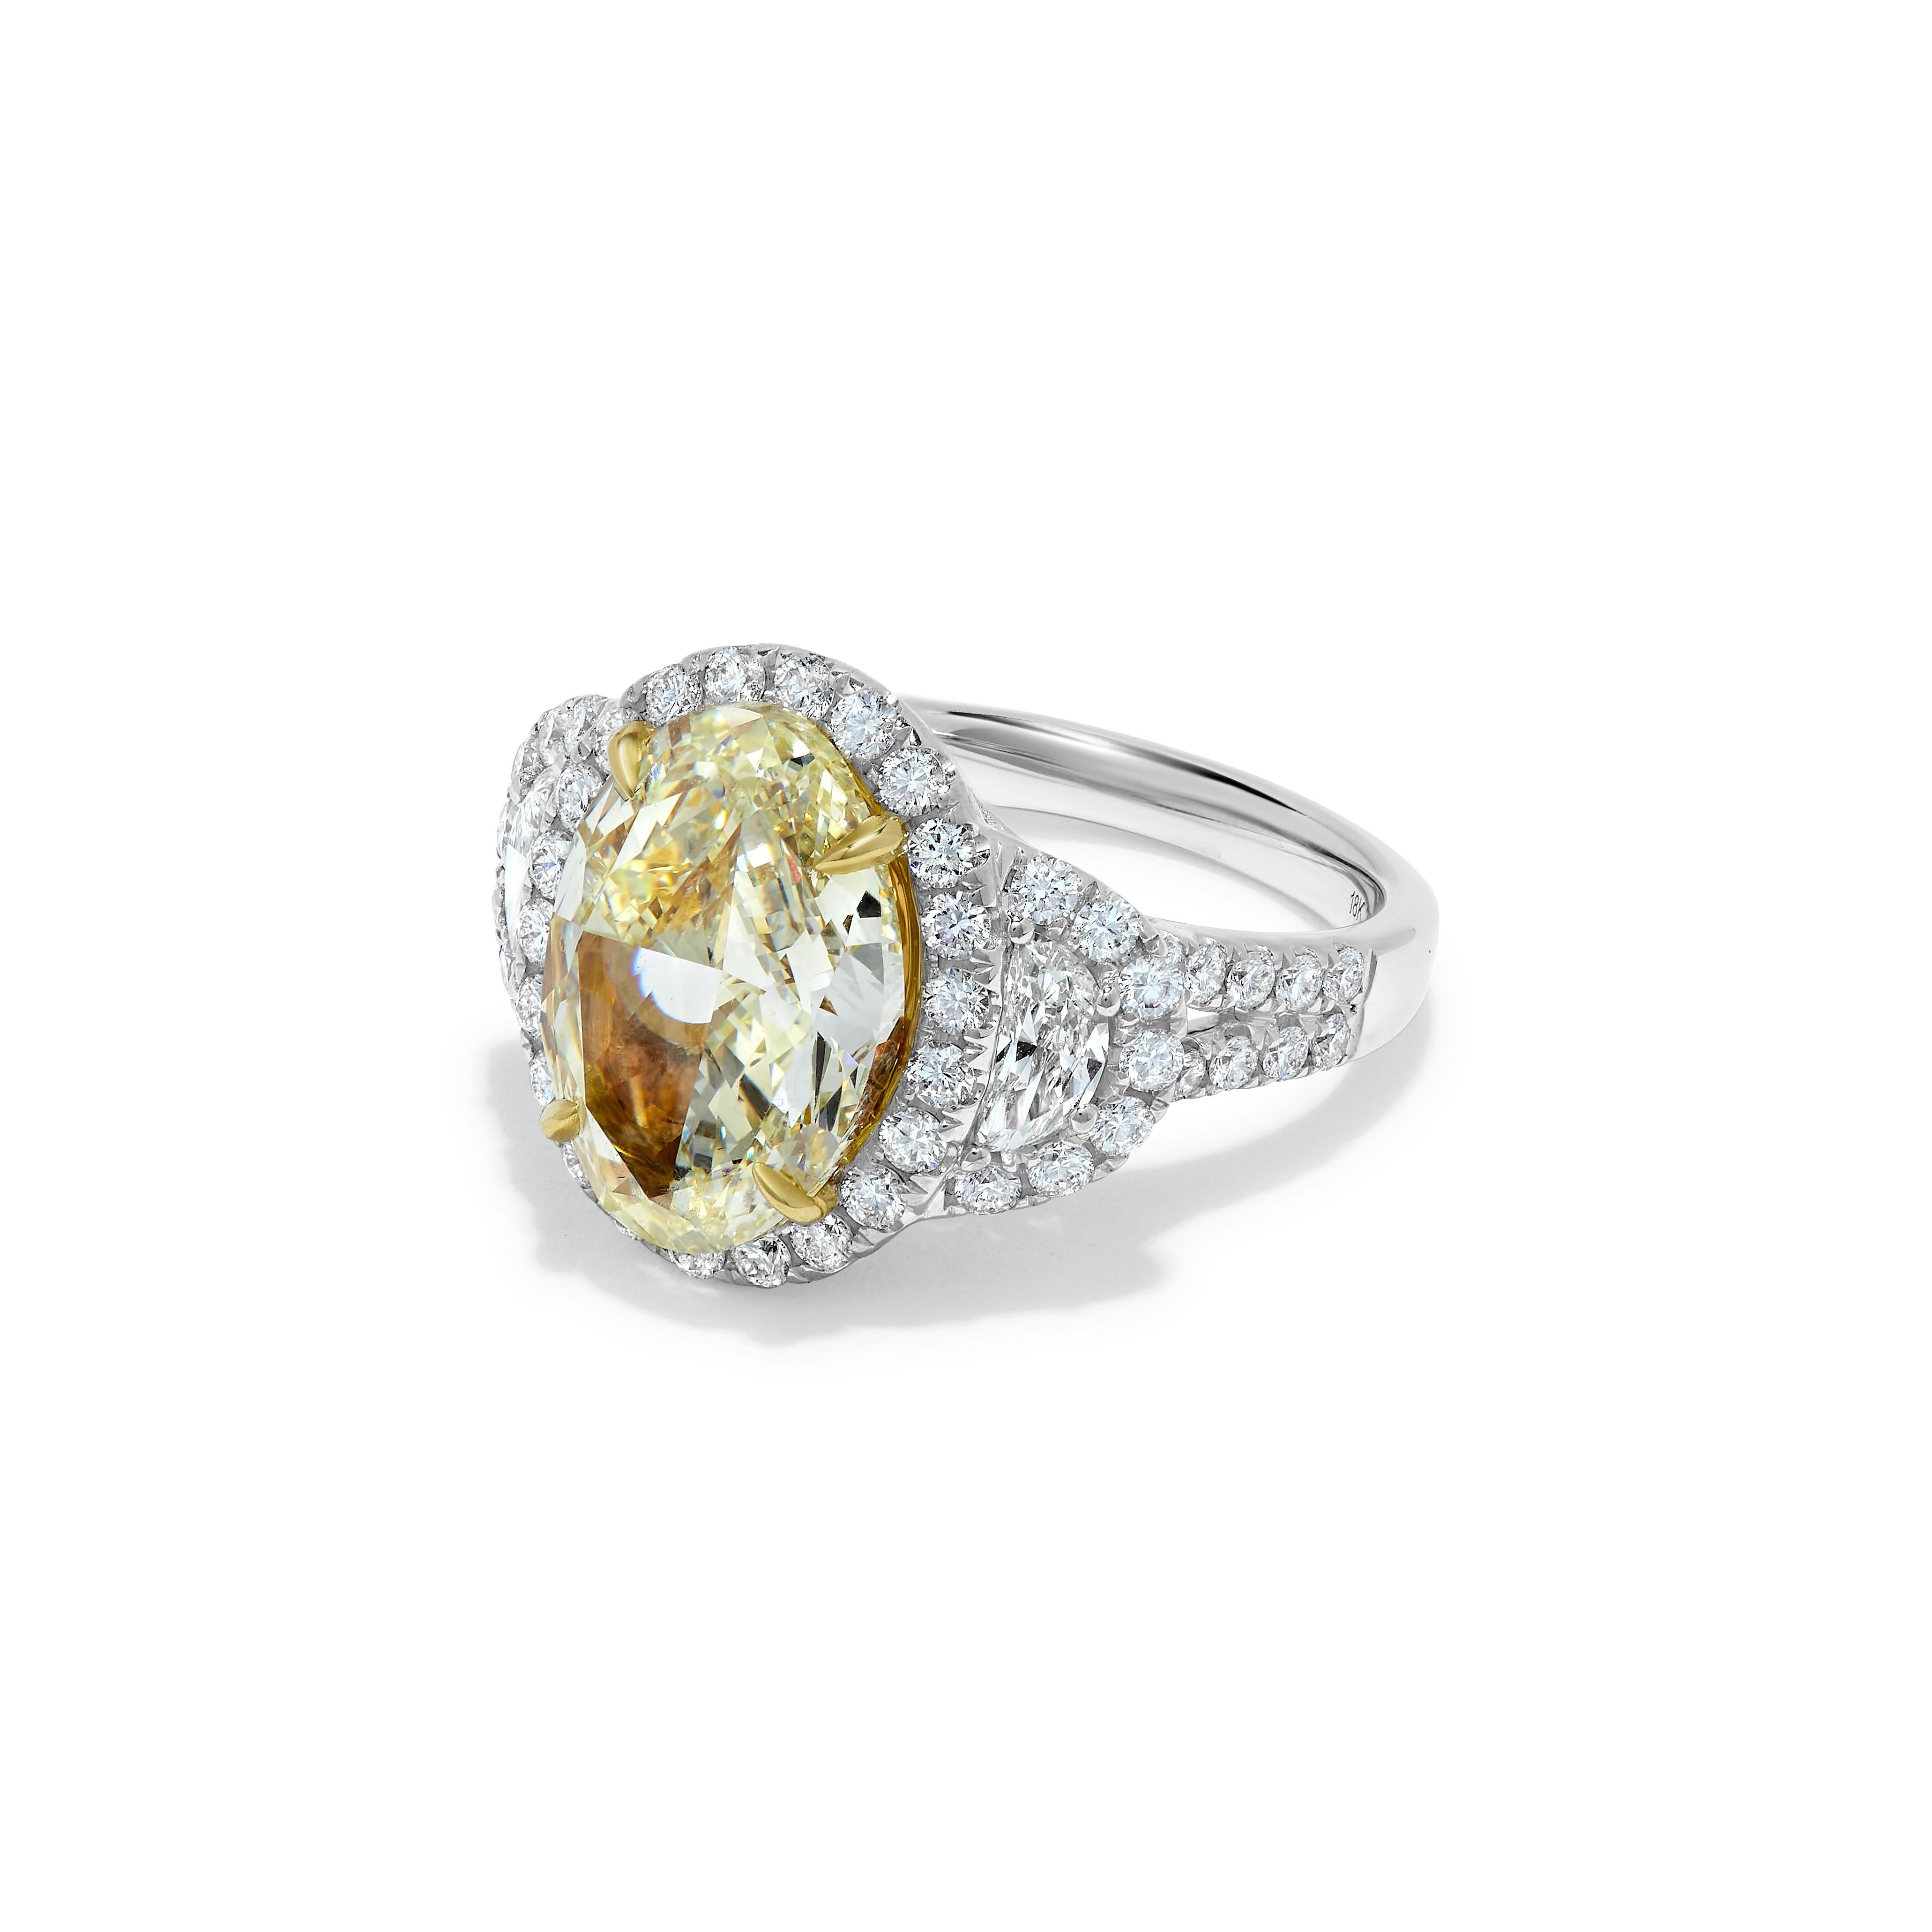 Der klassische GIA-zertifizierte Diamantring von RareGemWorld. Montiert in einer schönen Fassung aus 18K Gelb- und Weißgold mit einem natürlichen gelben Diamanten im Ovalschliff. Der gelbe Diamant ist umgeben von kleinen runden weißen Naturdiamanten